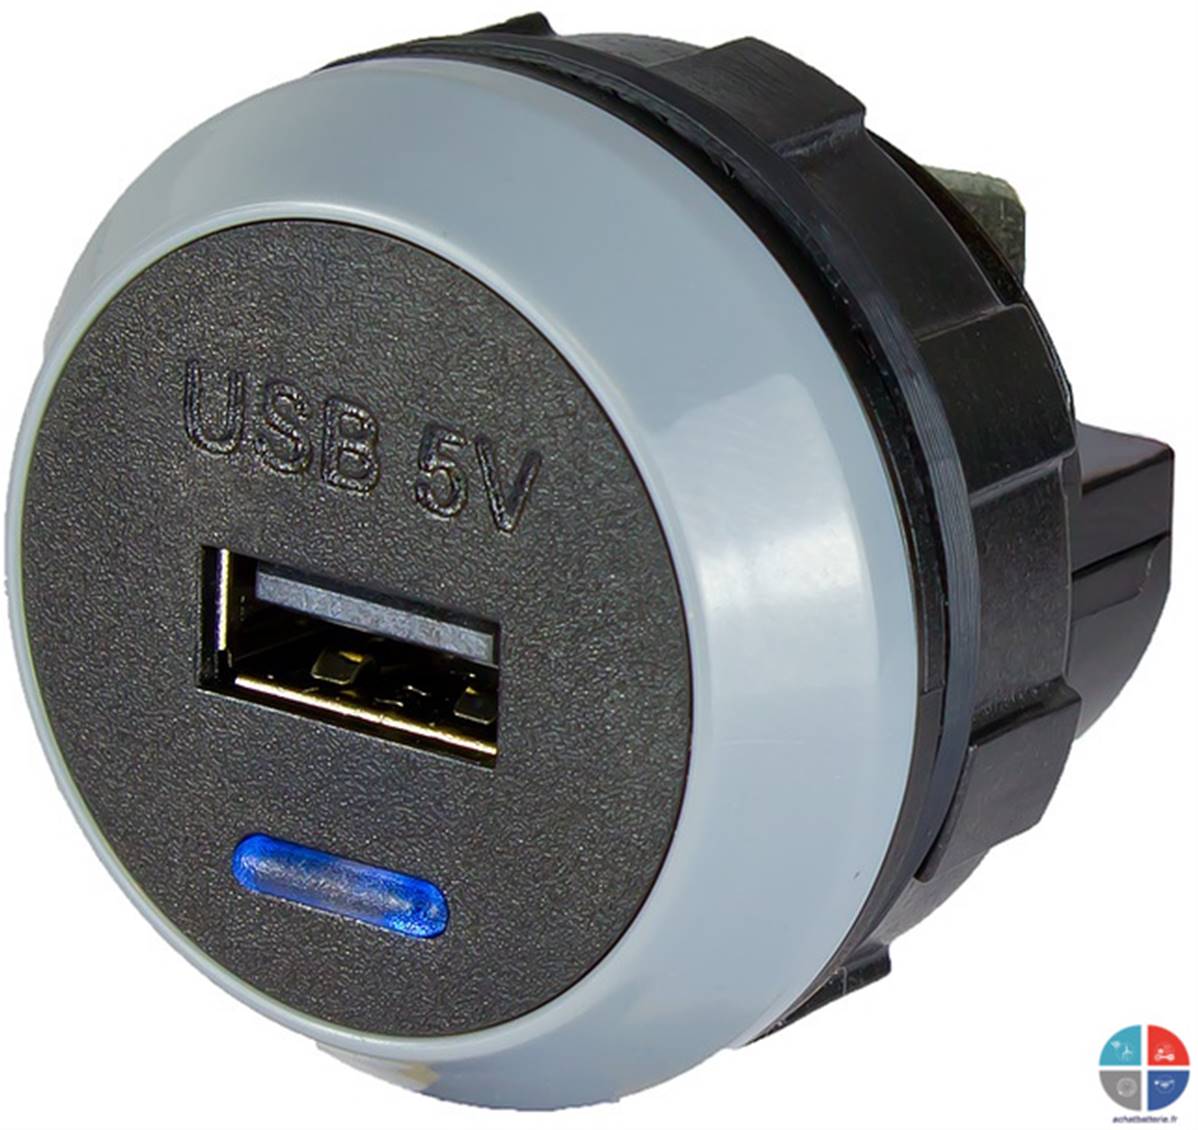 Prise USB 12v - 5v 2.1A encastrable Alfatronix, pour recharger votre  smartphone, tablette directemen